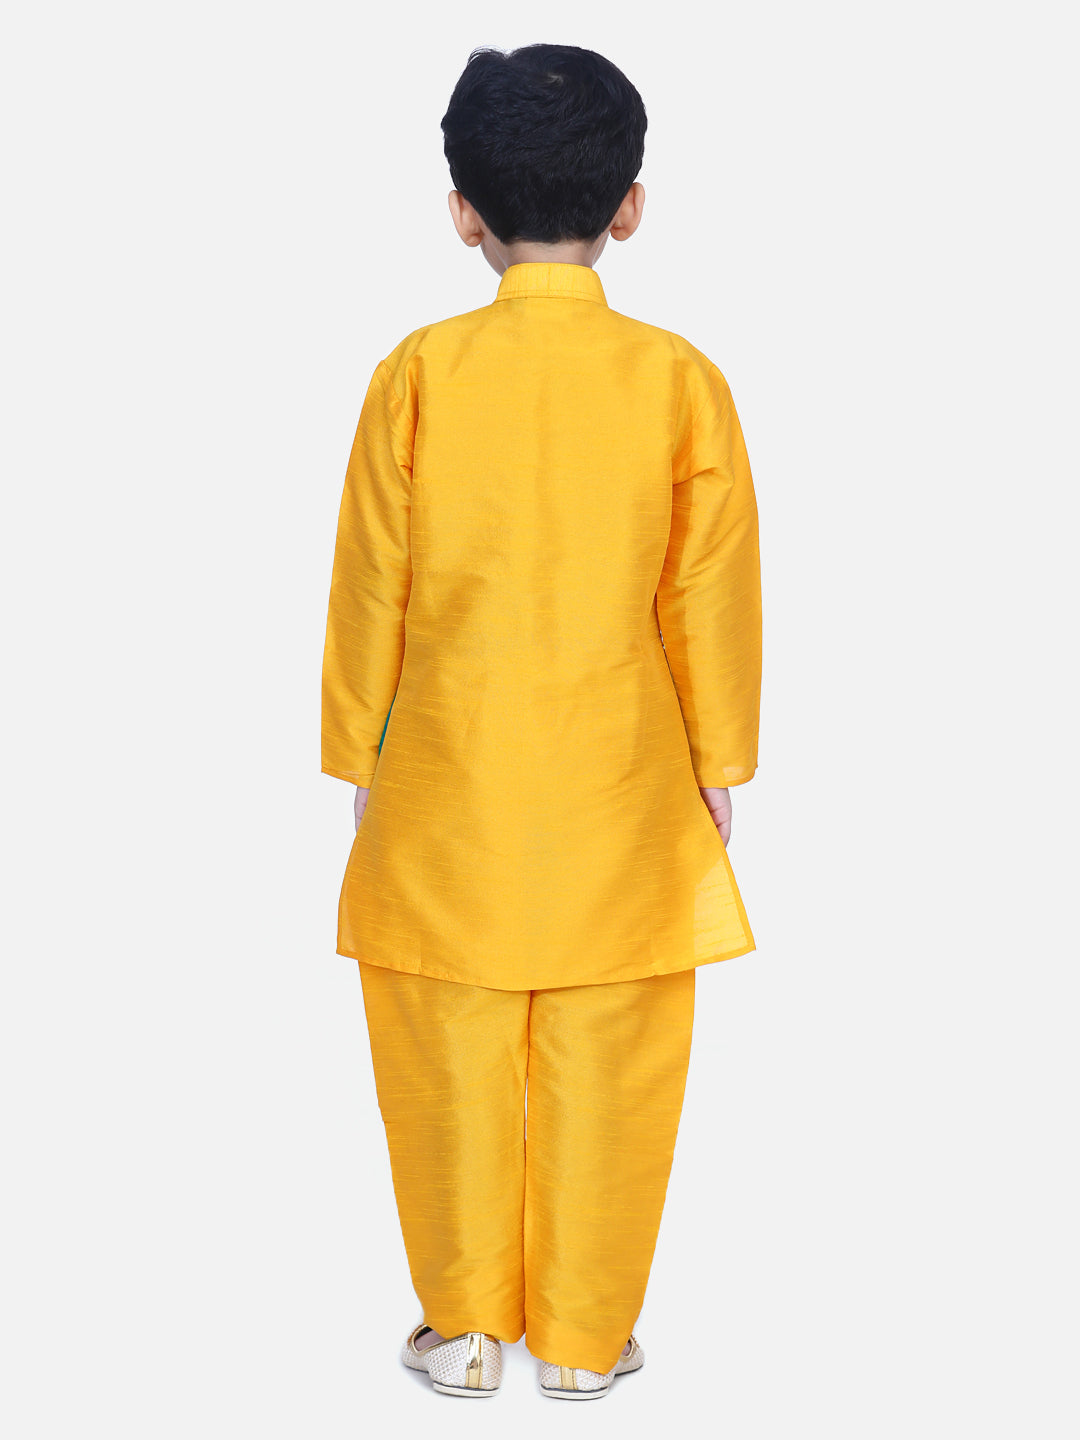 BownBee Full Sleeves Flower Design Attached Jacket Kurta With Pyjama - Orange